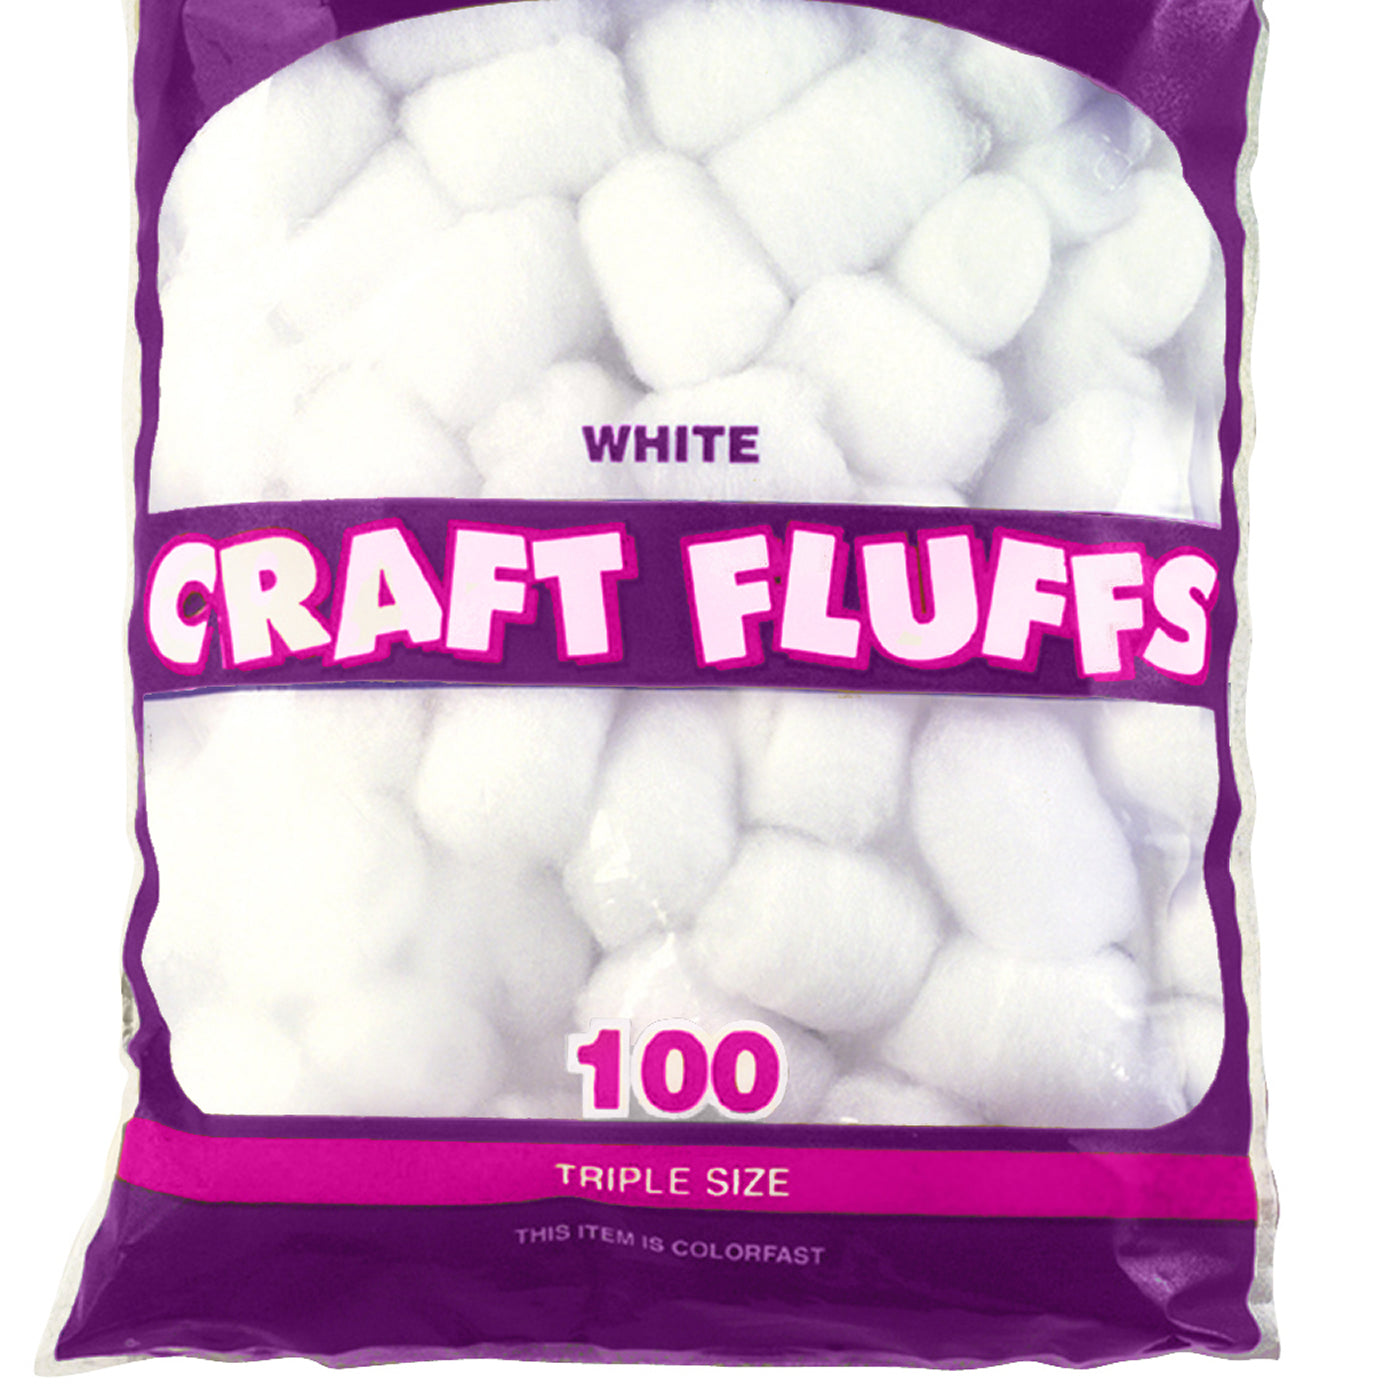 White craft fluffs